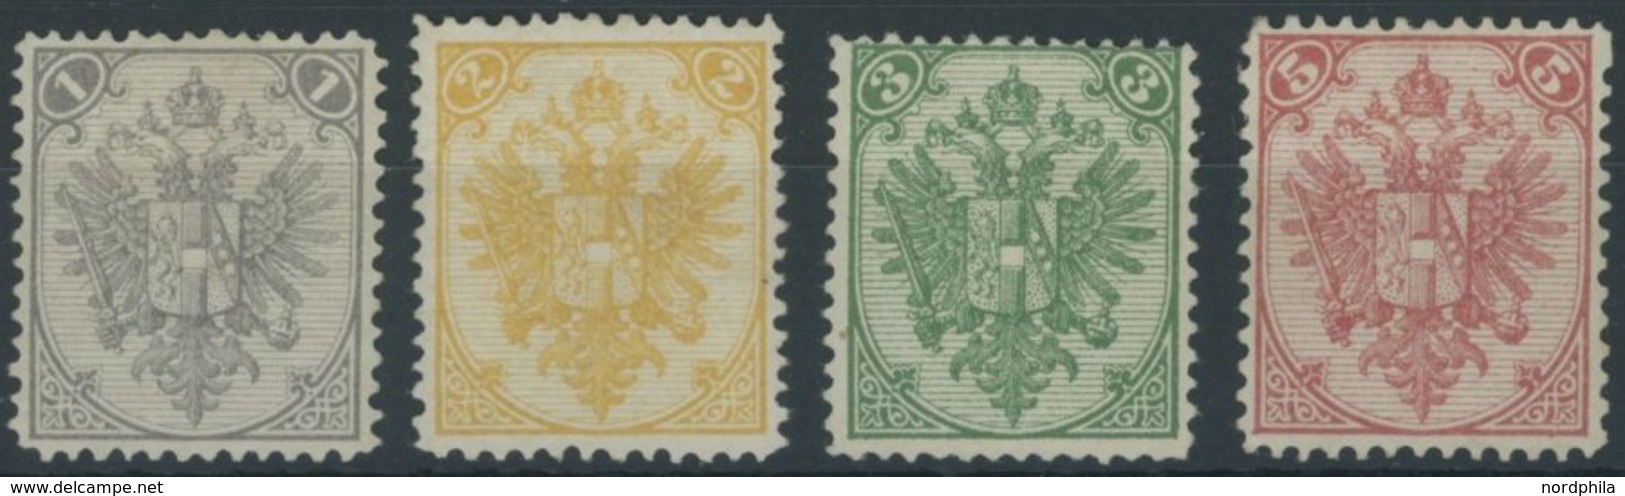 BOSNIEN UND HERZEGOWINA 1-4I *, 1879, 1 - 5 Kr. Steindruck, Falzreste, 4 Prachtwerte, Signiert, Mi. 135.- - Bosnia Herzegovina